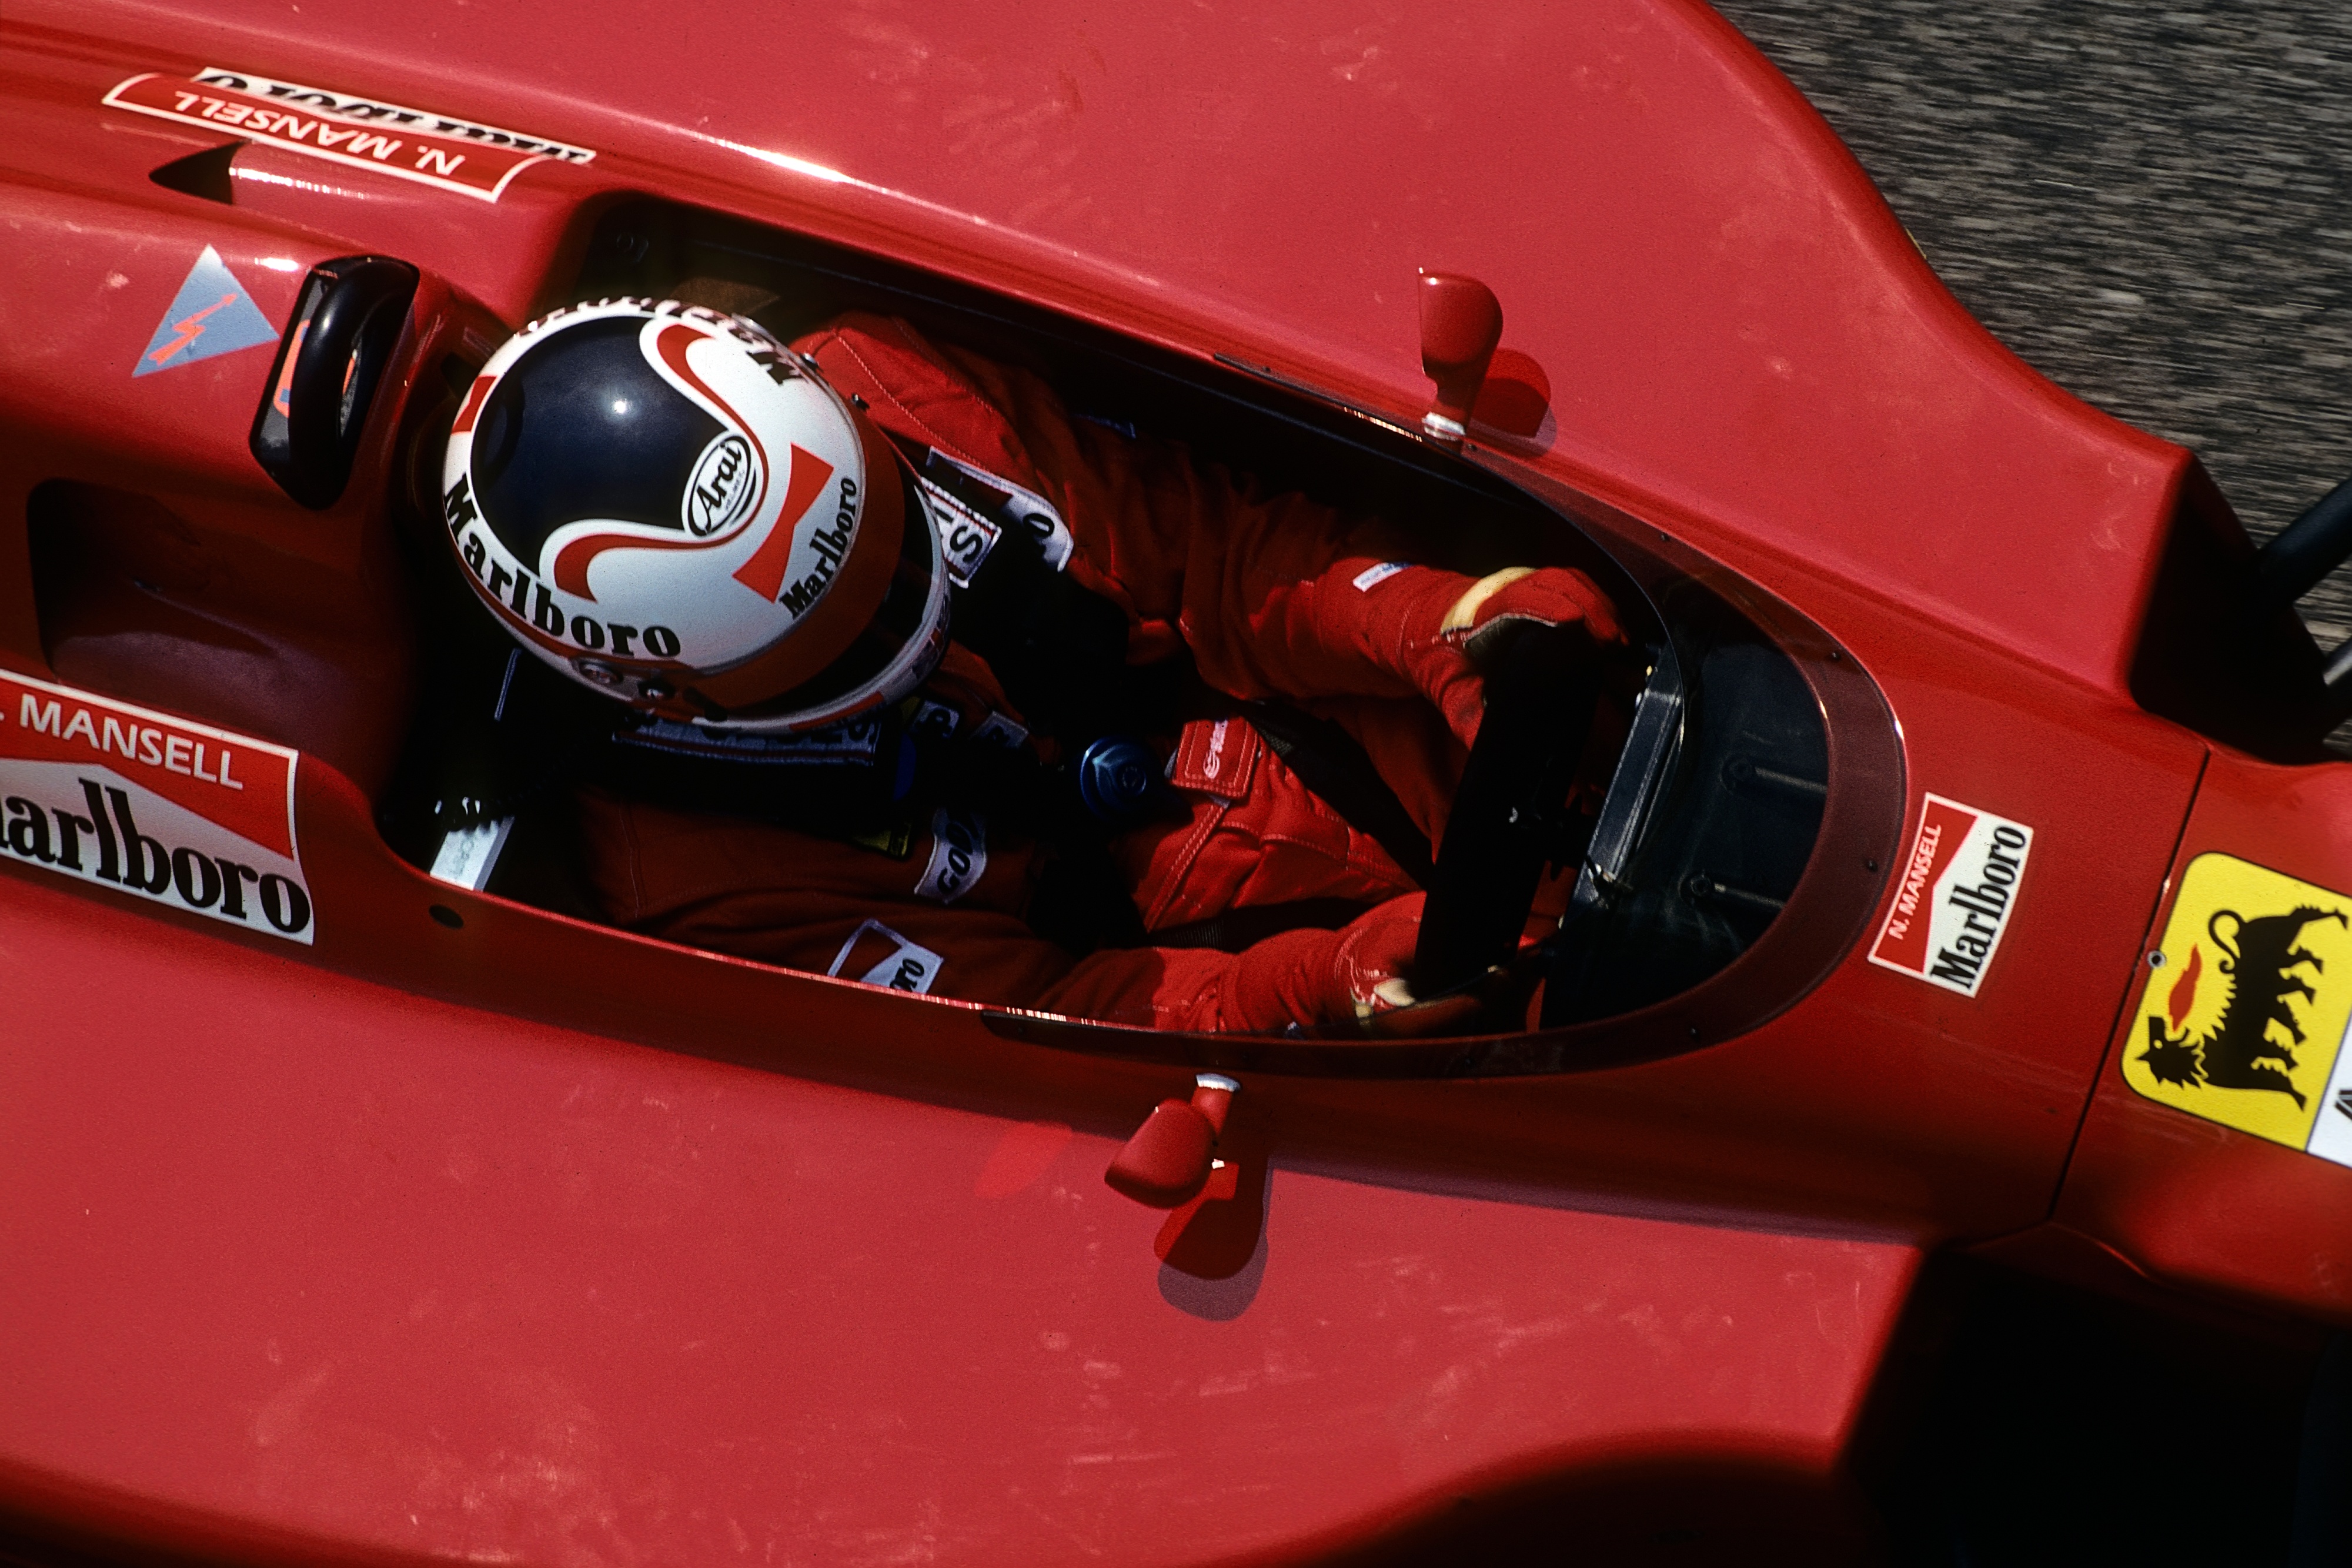 Une voiture de F1 rouge vif prise d'en haut.  La voiture occupe la largeur du cadre de l’image.  À l'intérieur est assis le conducteur, portant un casque blanc et une combinaison de course rouge, les mains sur le volant.  Le casque du conducteur et la voiture sont décorés de logos lisant "Marlboro."